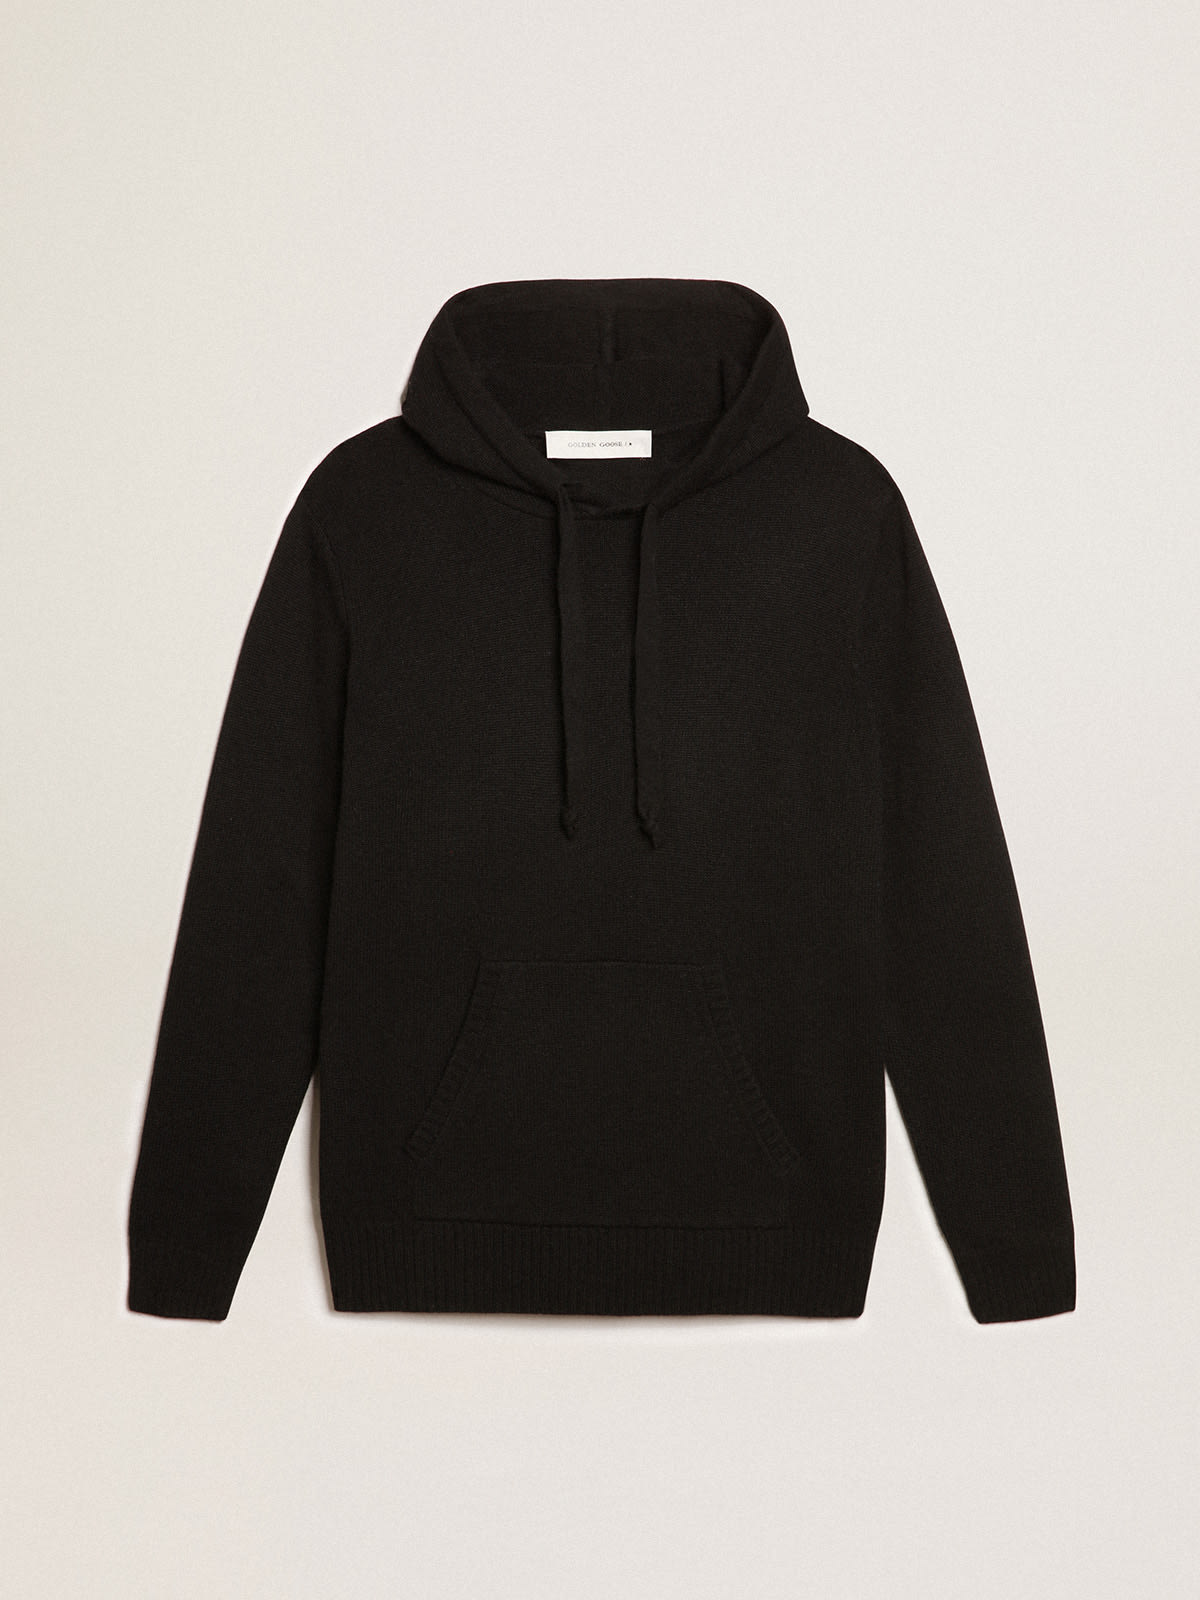 Golden Goose - Men’s black cashmere blend sweatshirt with hood in 